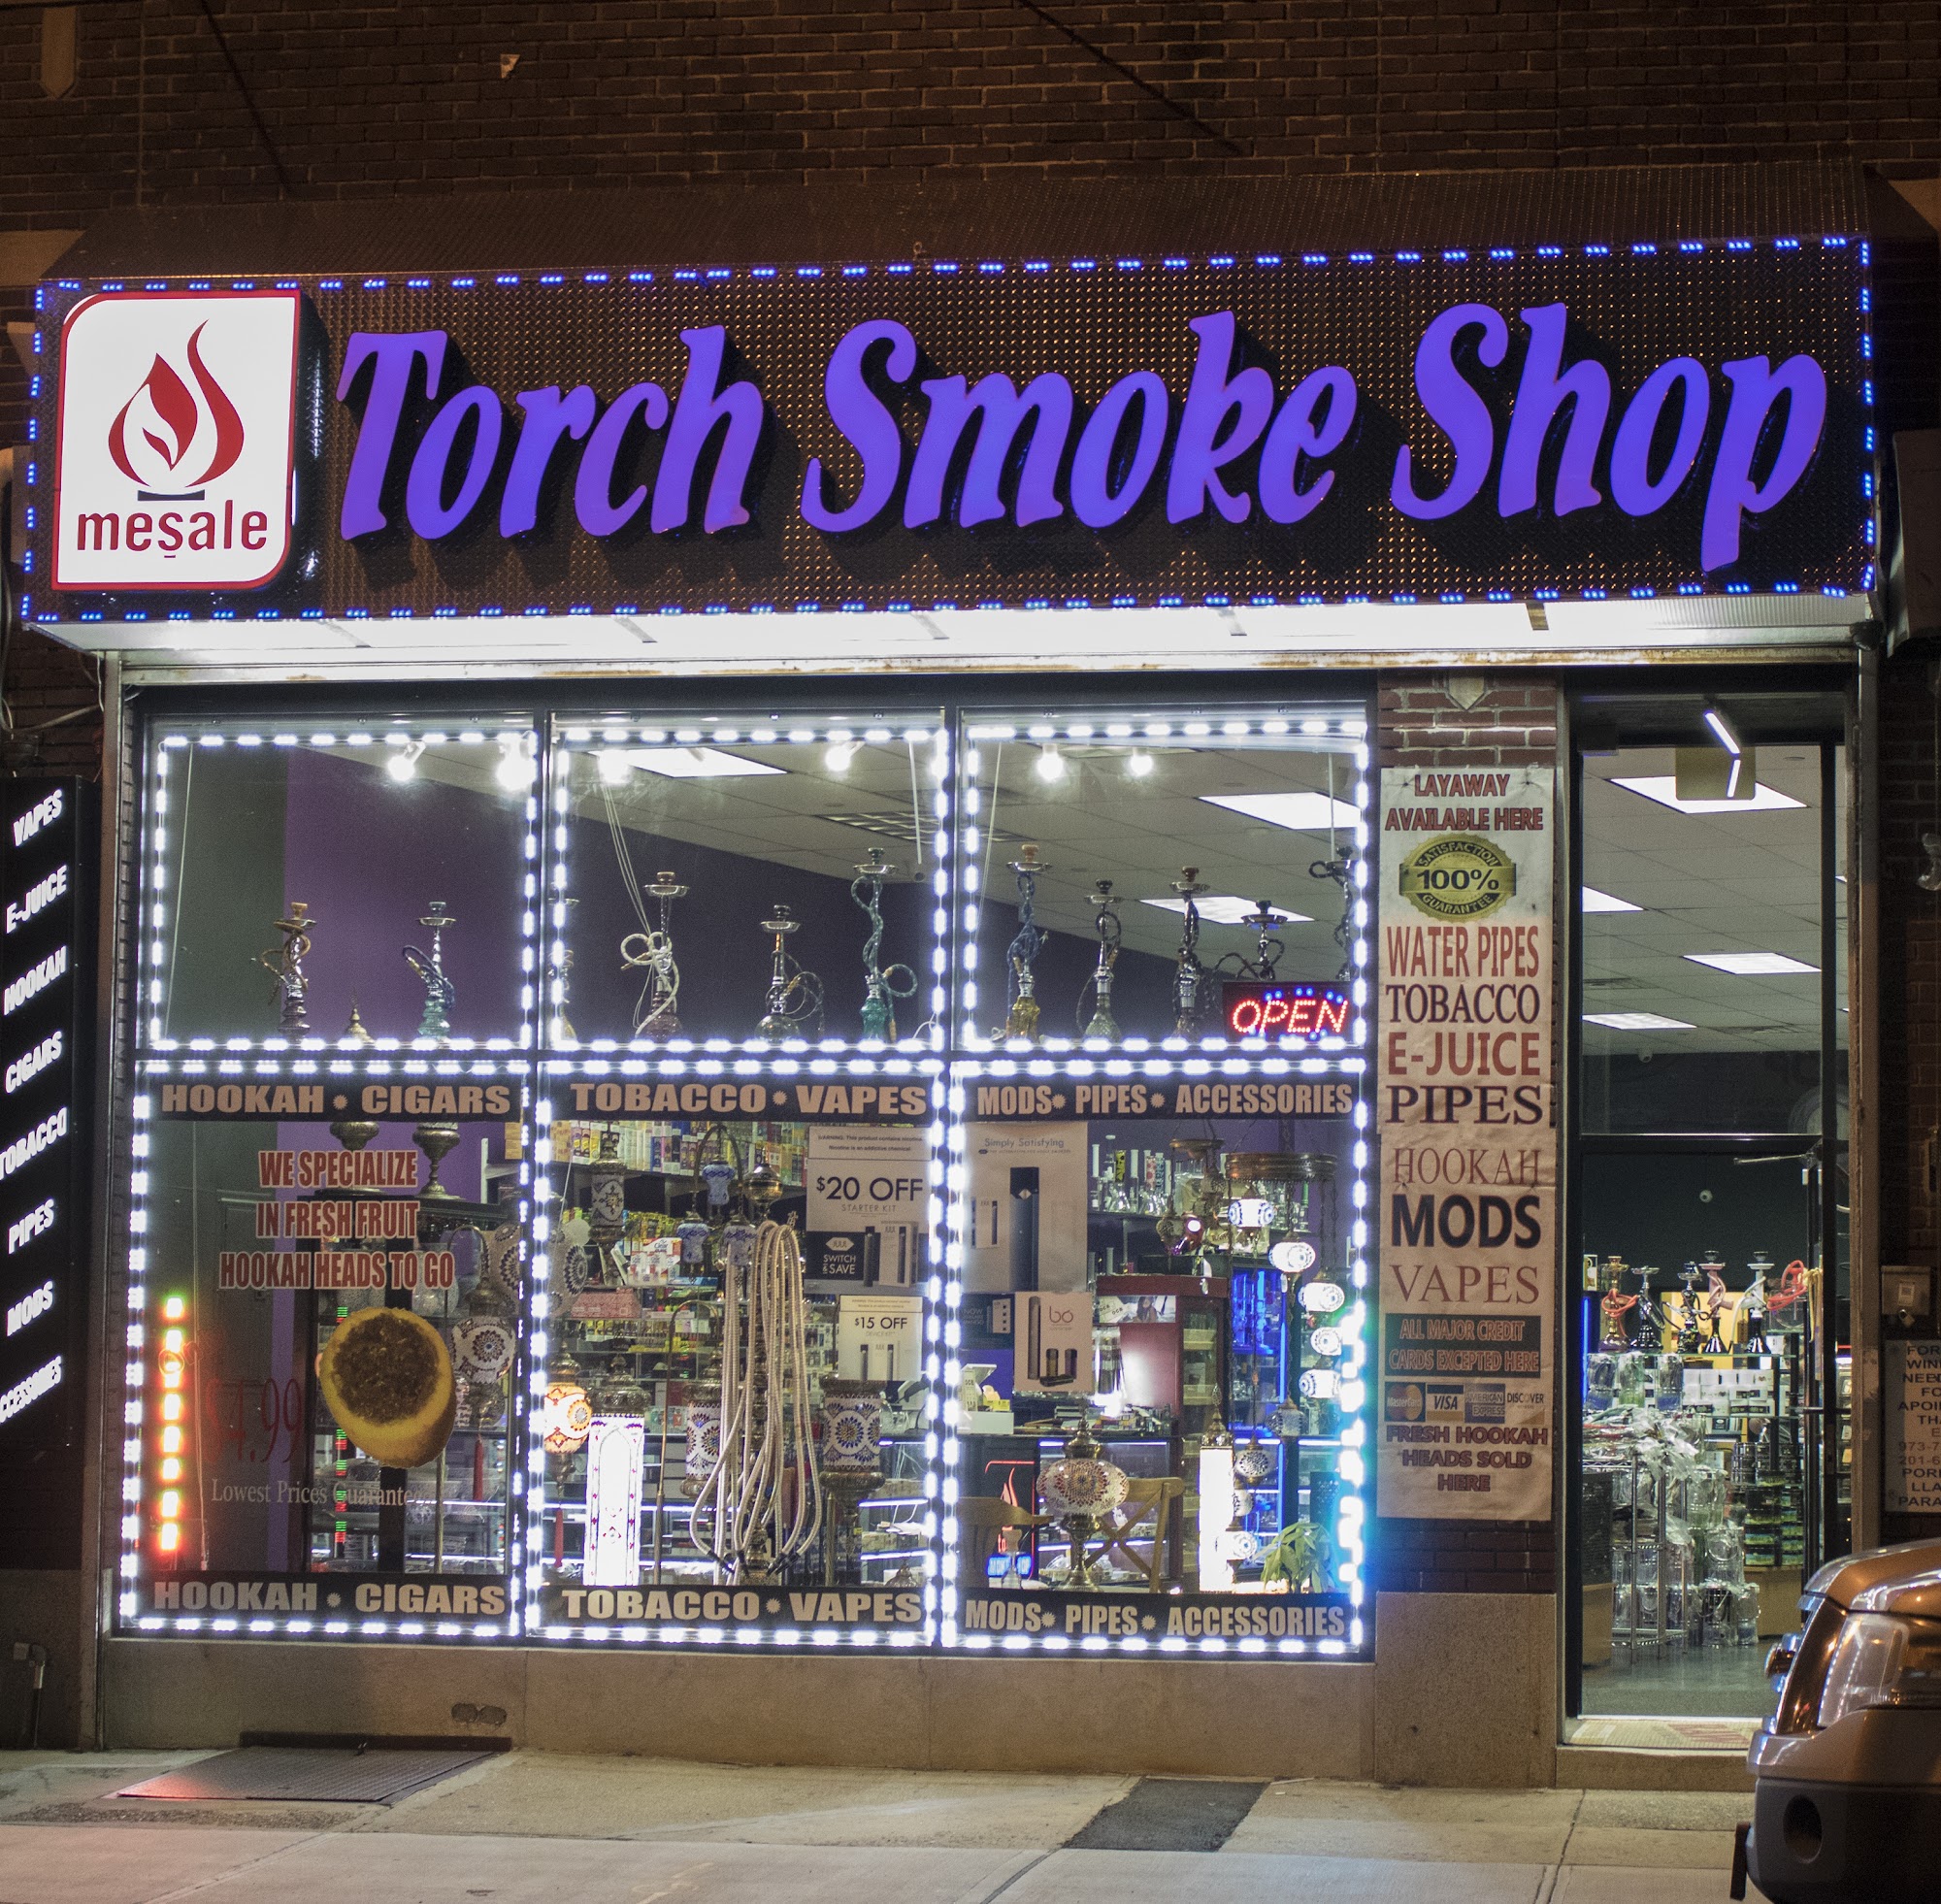 Torch Smoke Shop